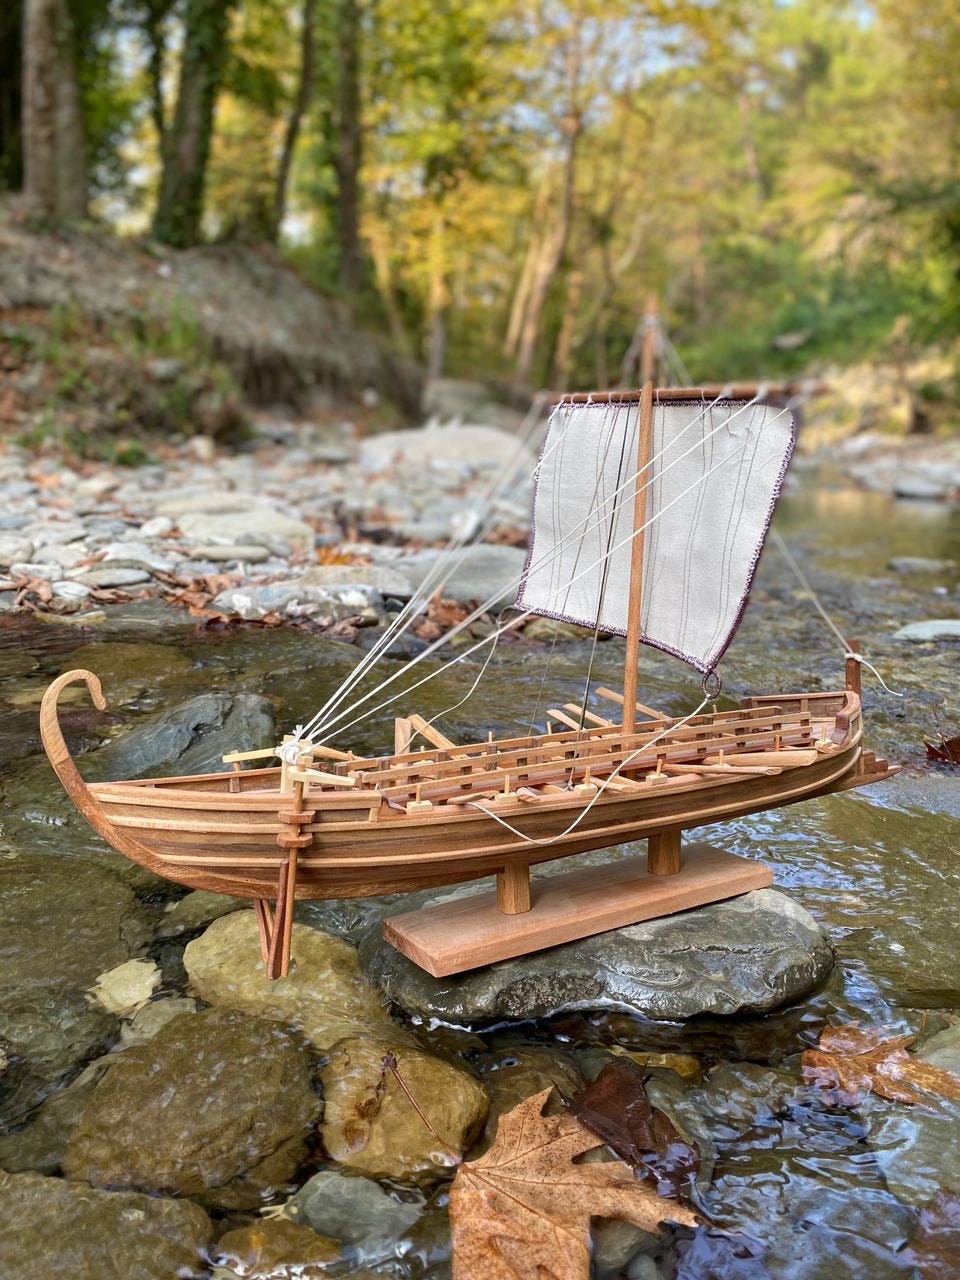 Model Ship Display, Model Wooden Ship, Model Sailing Ship, Sailing